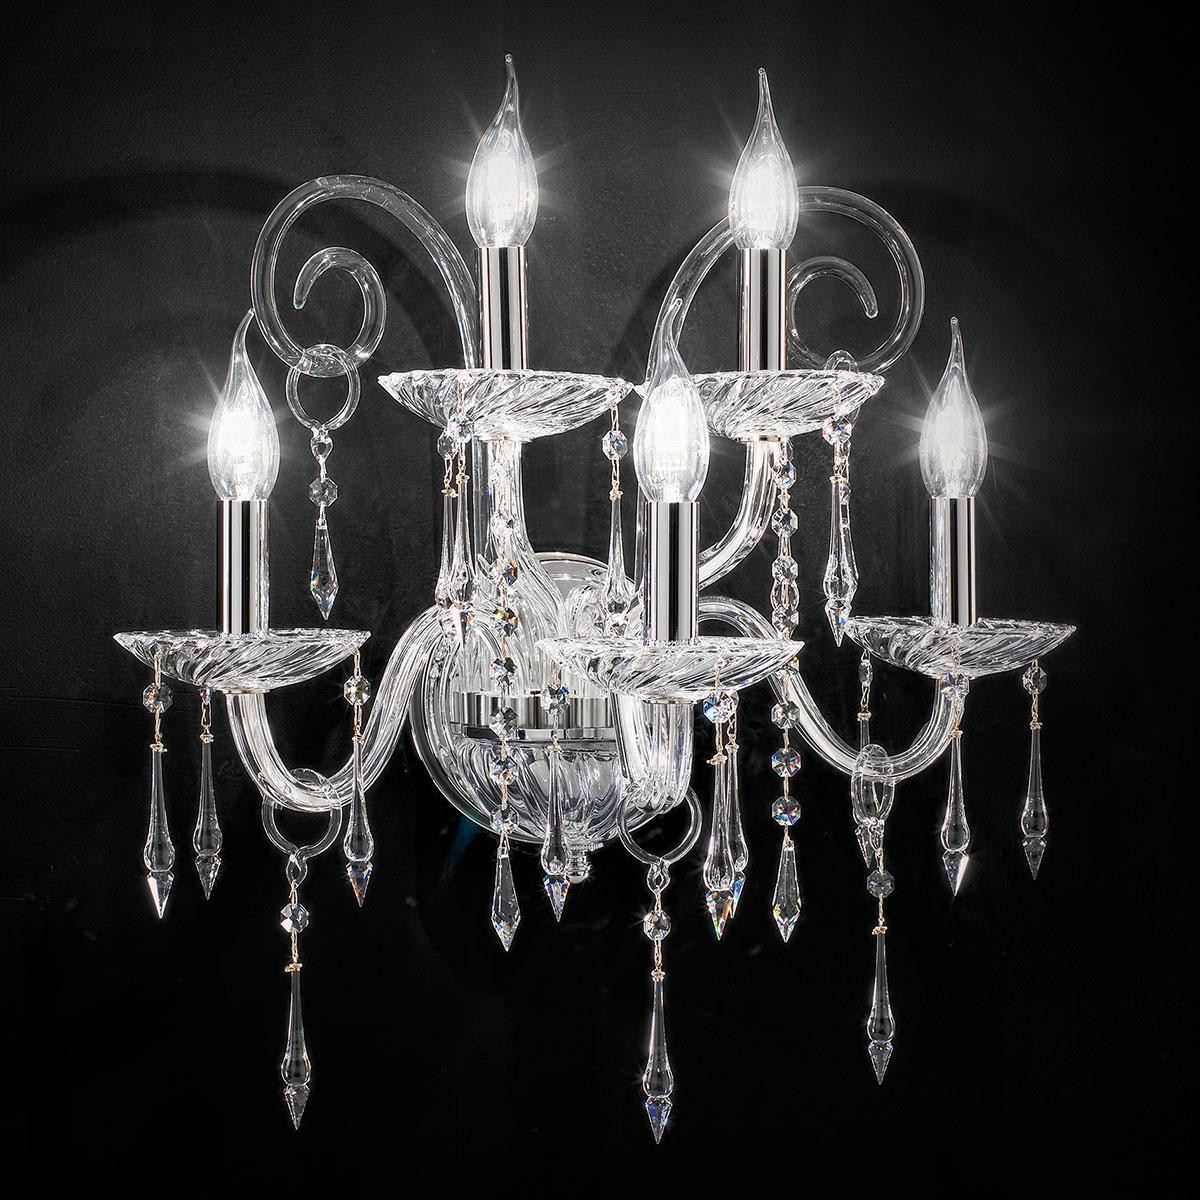 "Amadeo" aplique veneciano de pared en cristal - 3+2 luces - transparente con Swarovski colgantes